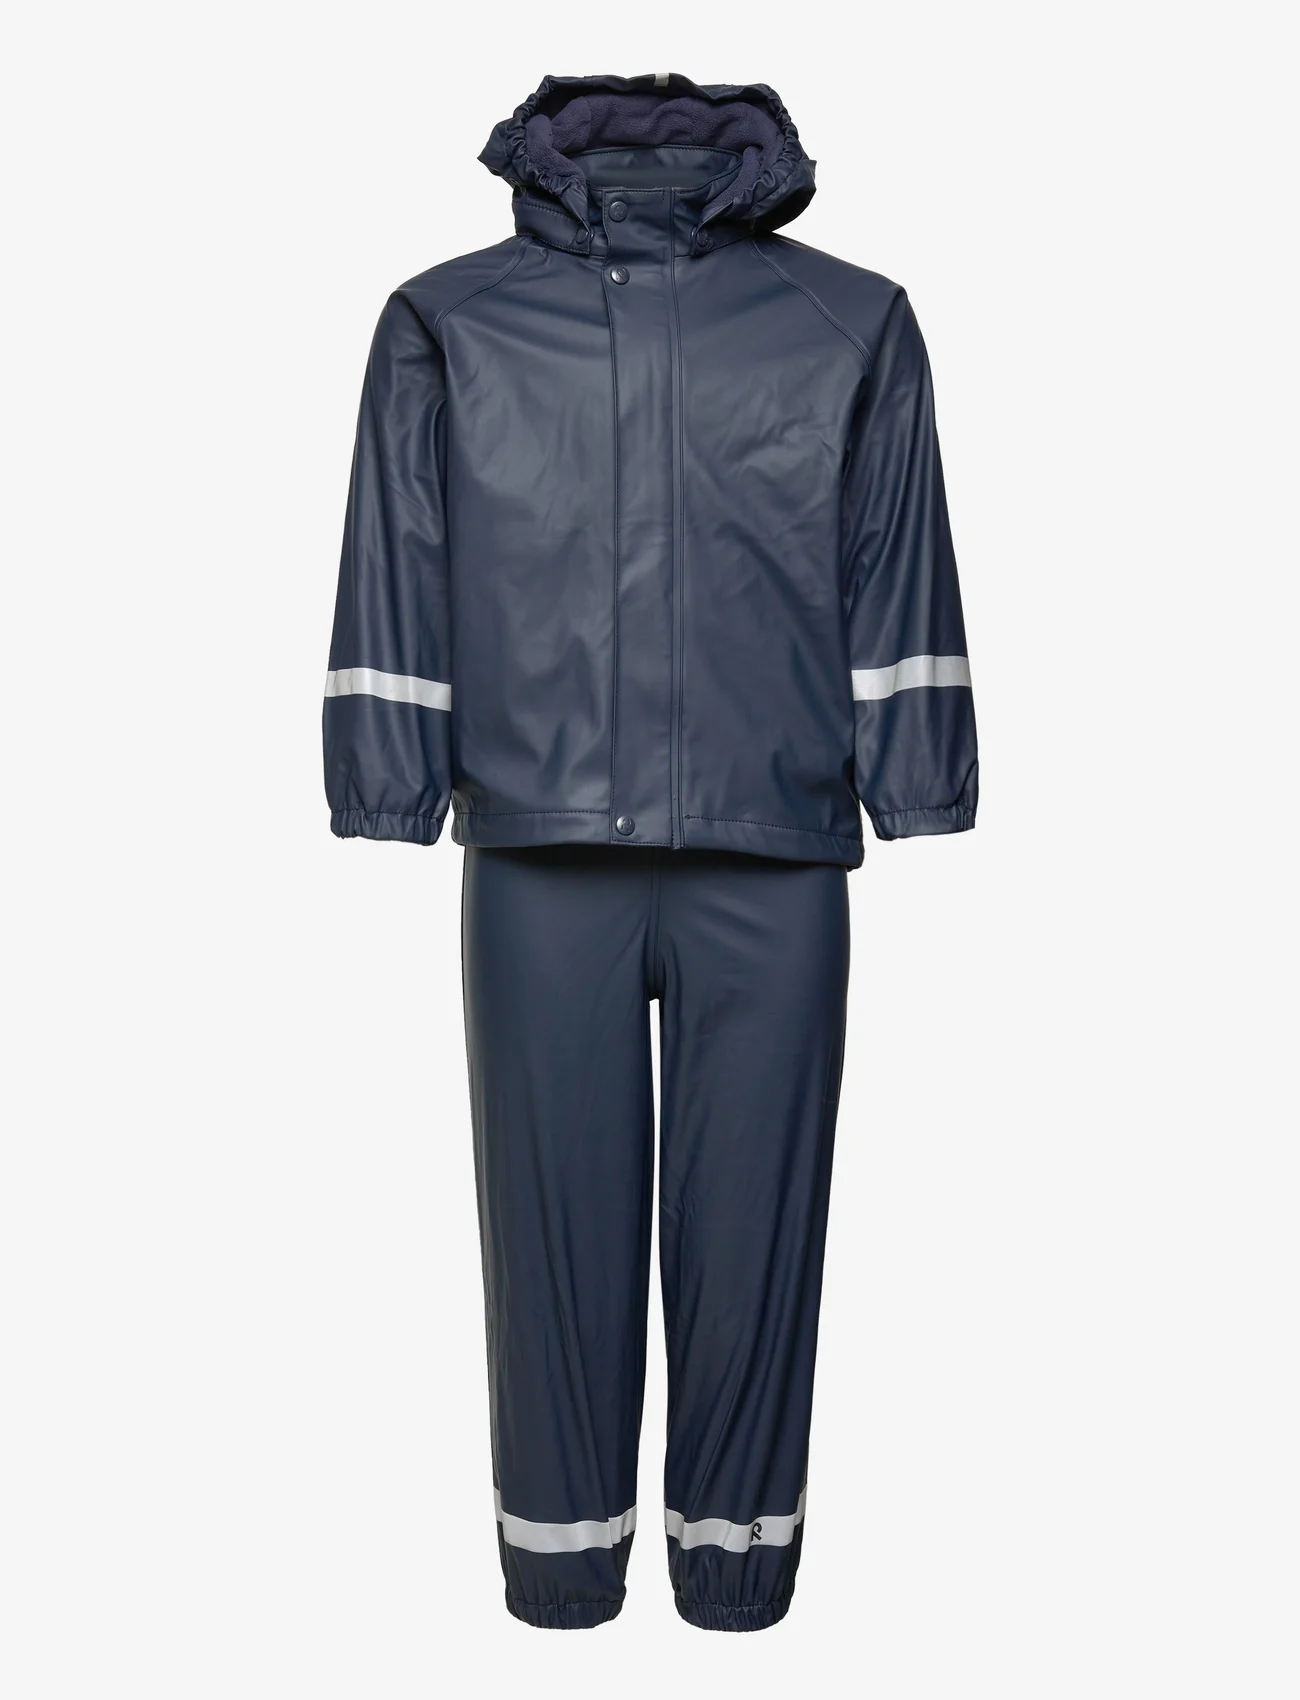 rygte Indsprøjtning Teenageår Reima Kids' Rain Outfit Joki - 389 kr. Køb Regntøj fra Reima online på  Boozt.com. Hurtig levering & nem retur